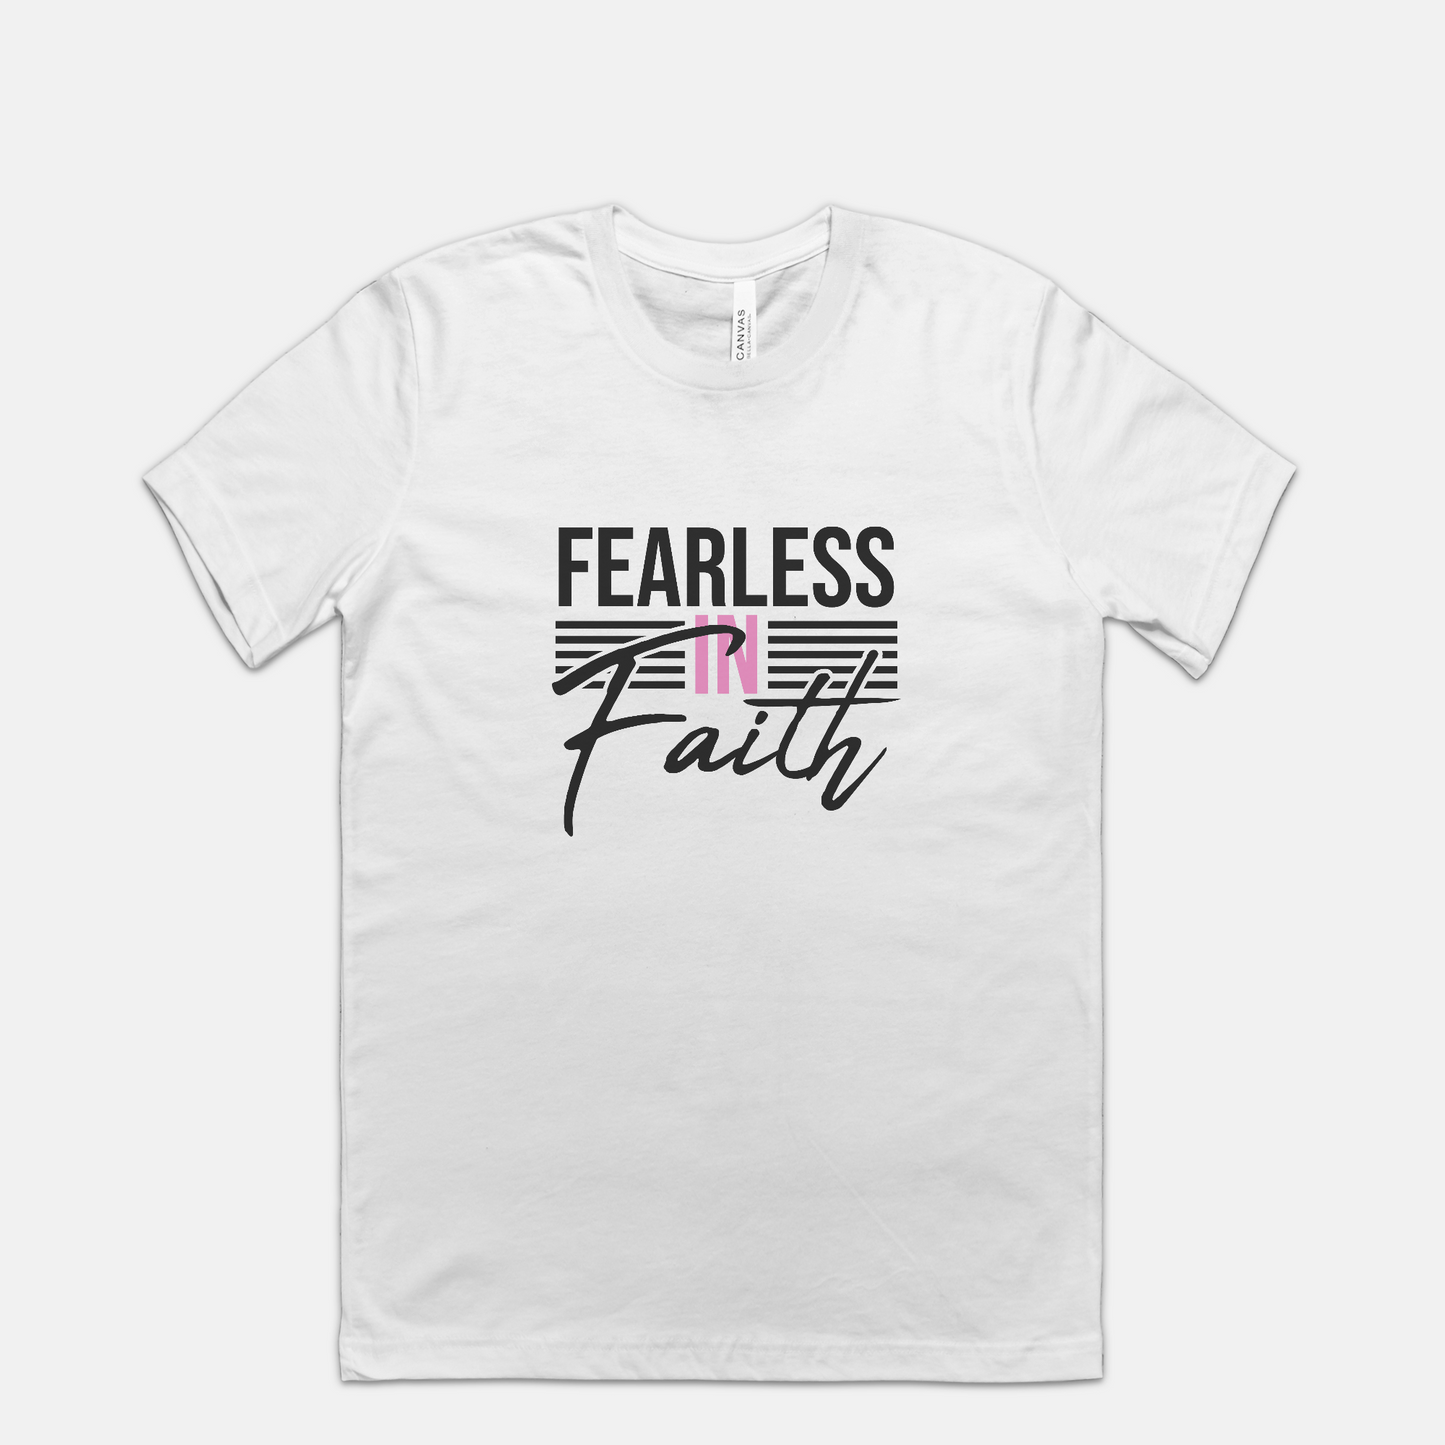 Fearless In Faith Tee